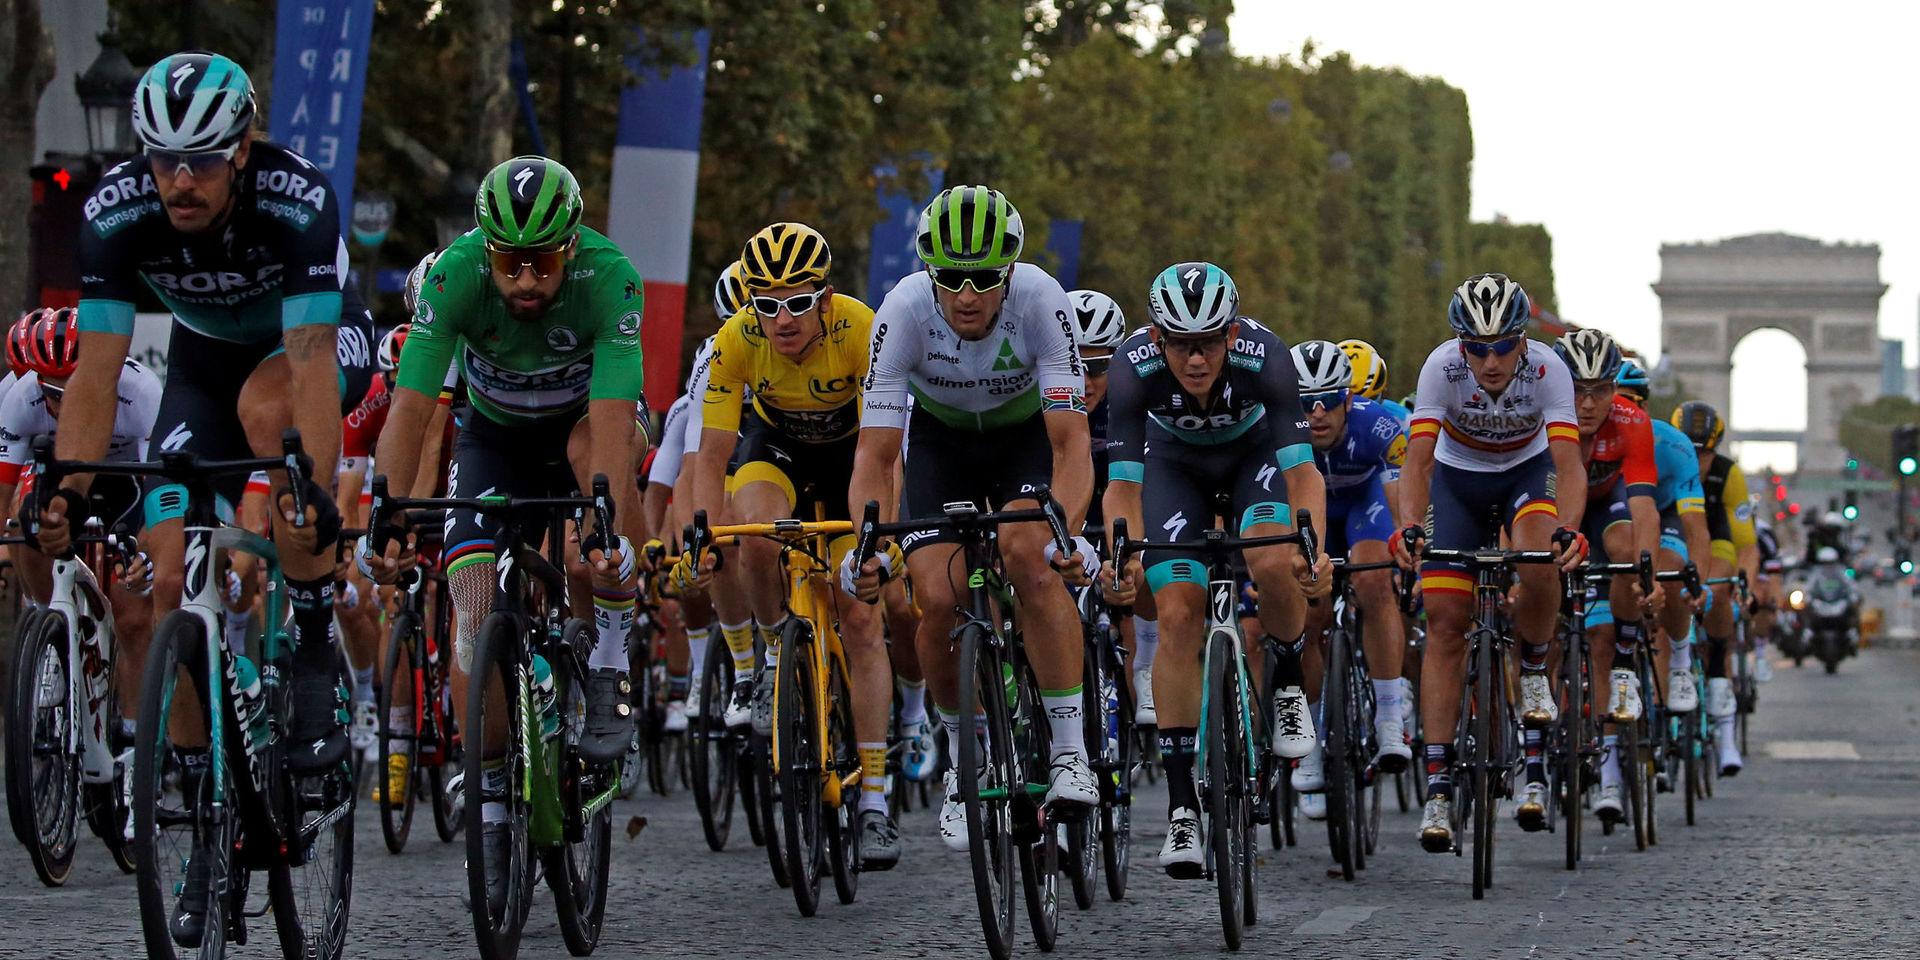 6-28 juli äger ett av världens största sportarrangemang rum i Frankrike när det är dags för Tour de France. 